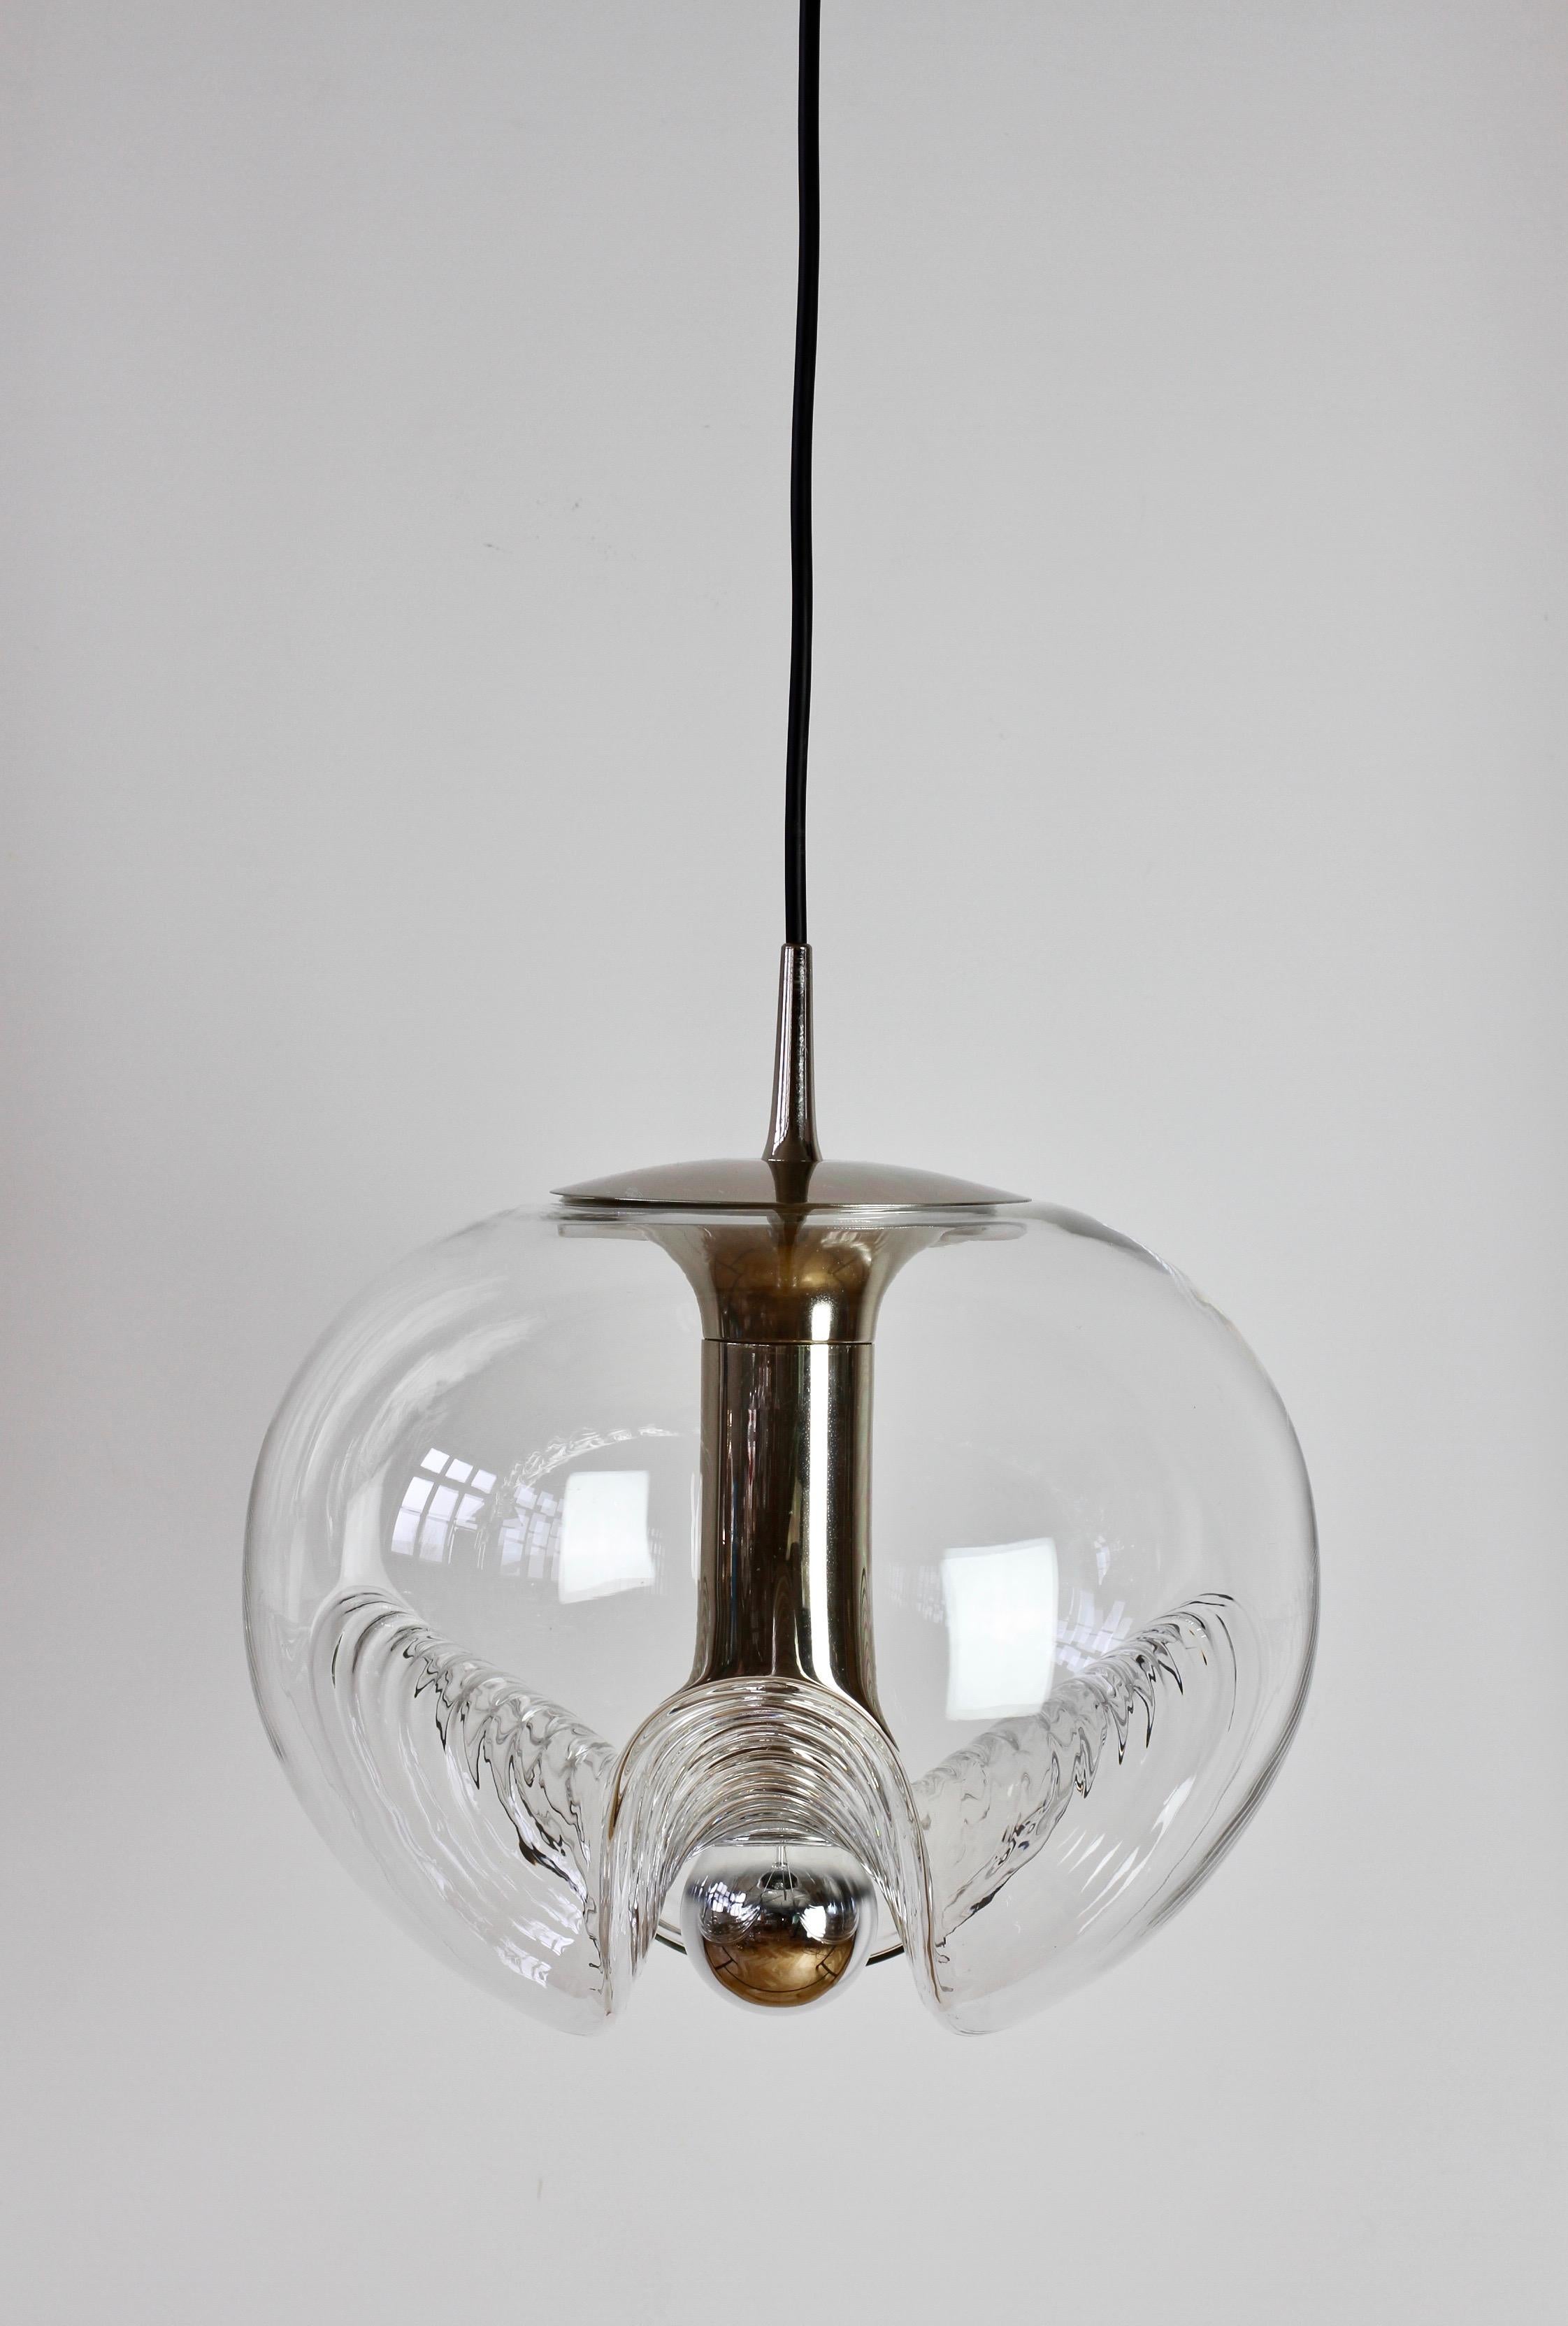 Belle lampe pendante du milieu du siècle par Peill & Putzler dans les années 1970. Il s'agit d'une pièce de design absolument classique, avec un abat-jour en verre transparent et une forme de bulle moulée ondulée ou nervurée, qui projette une belle